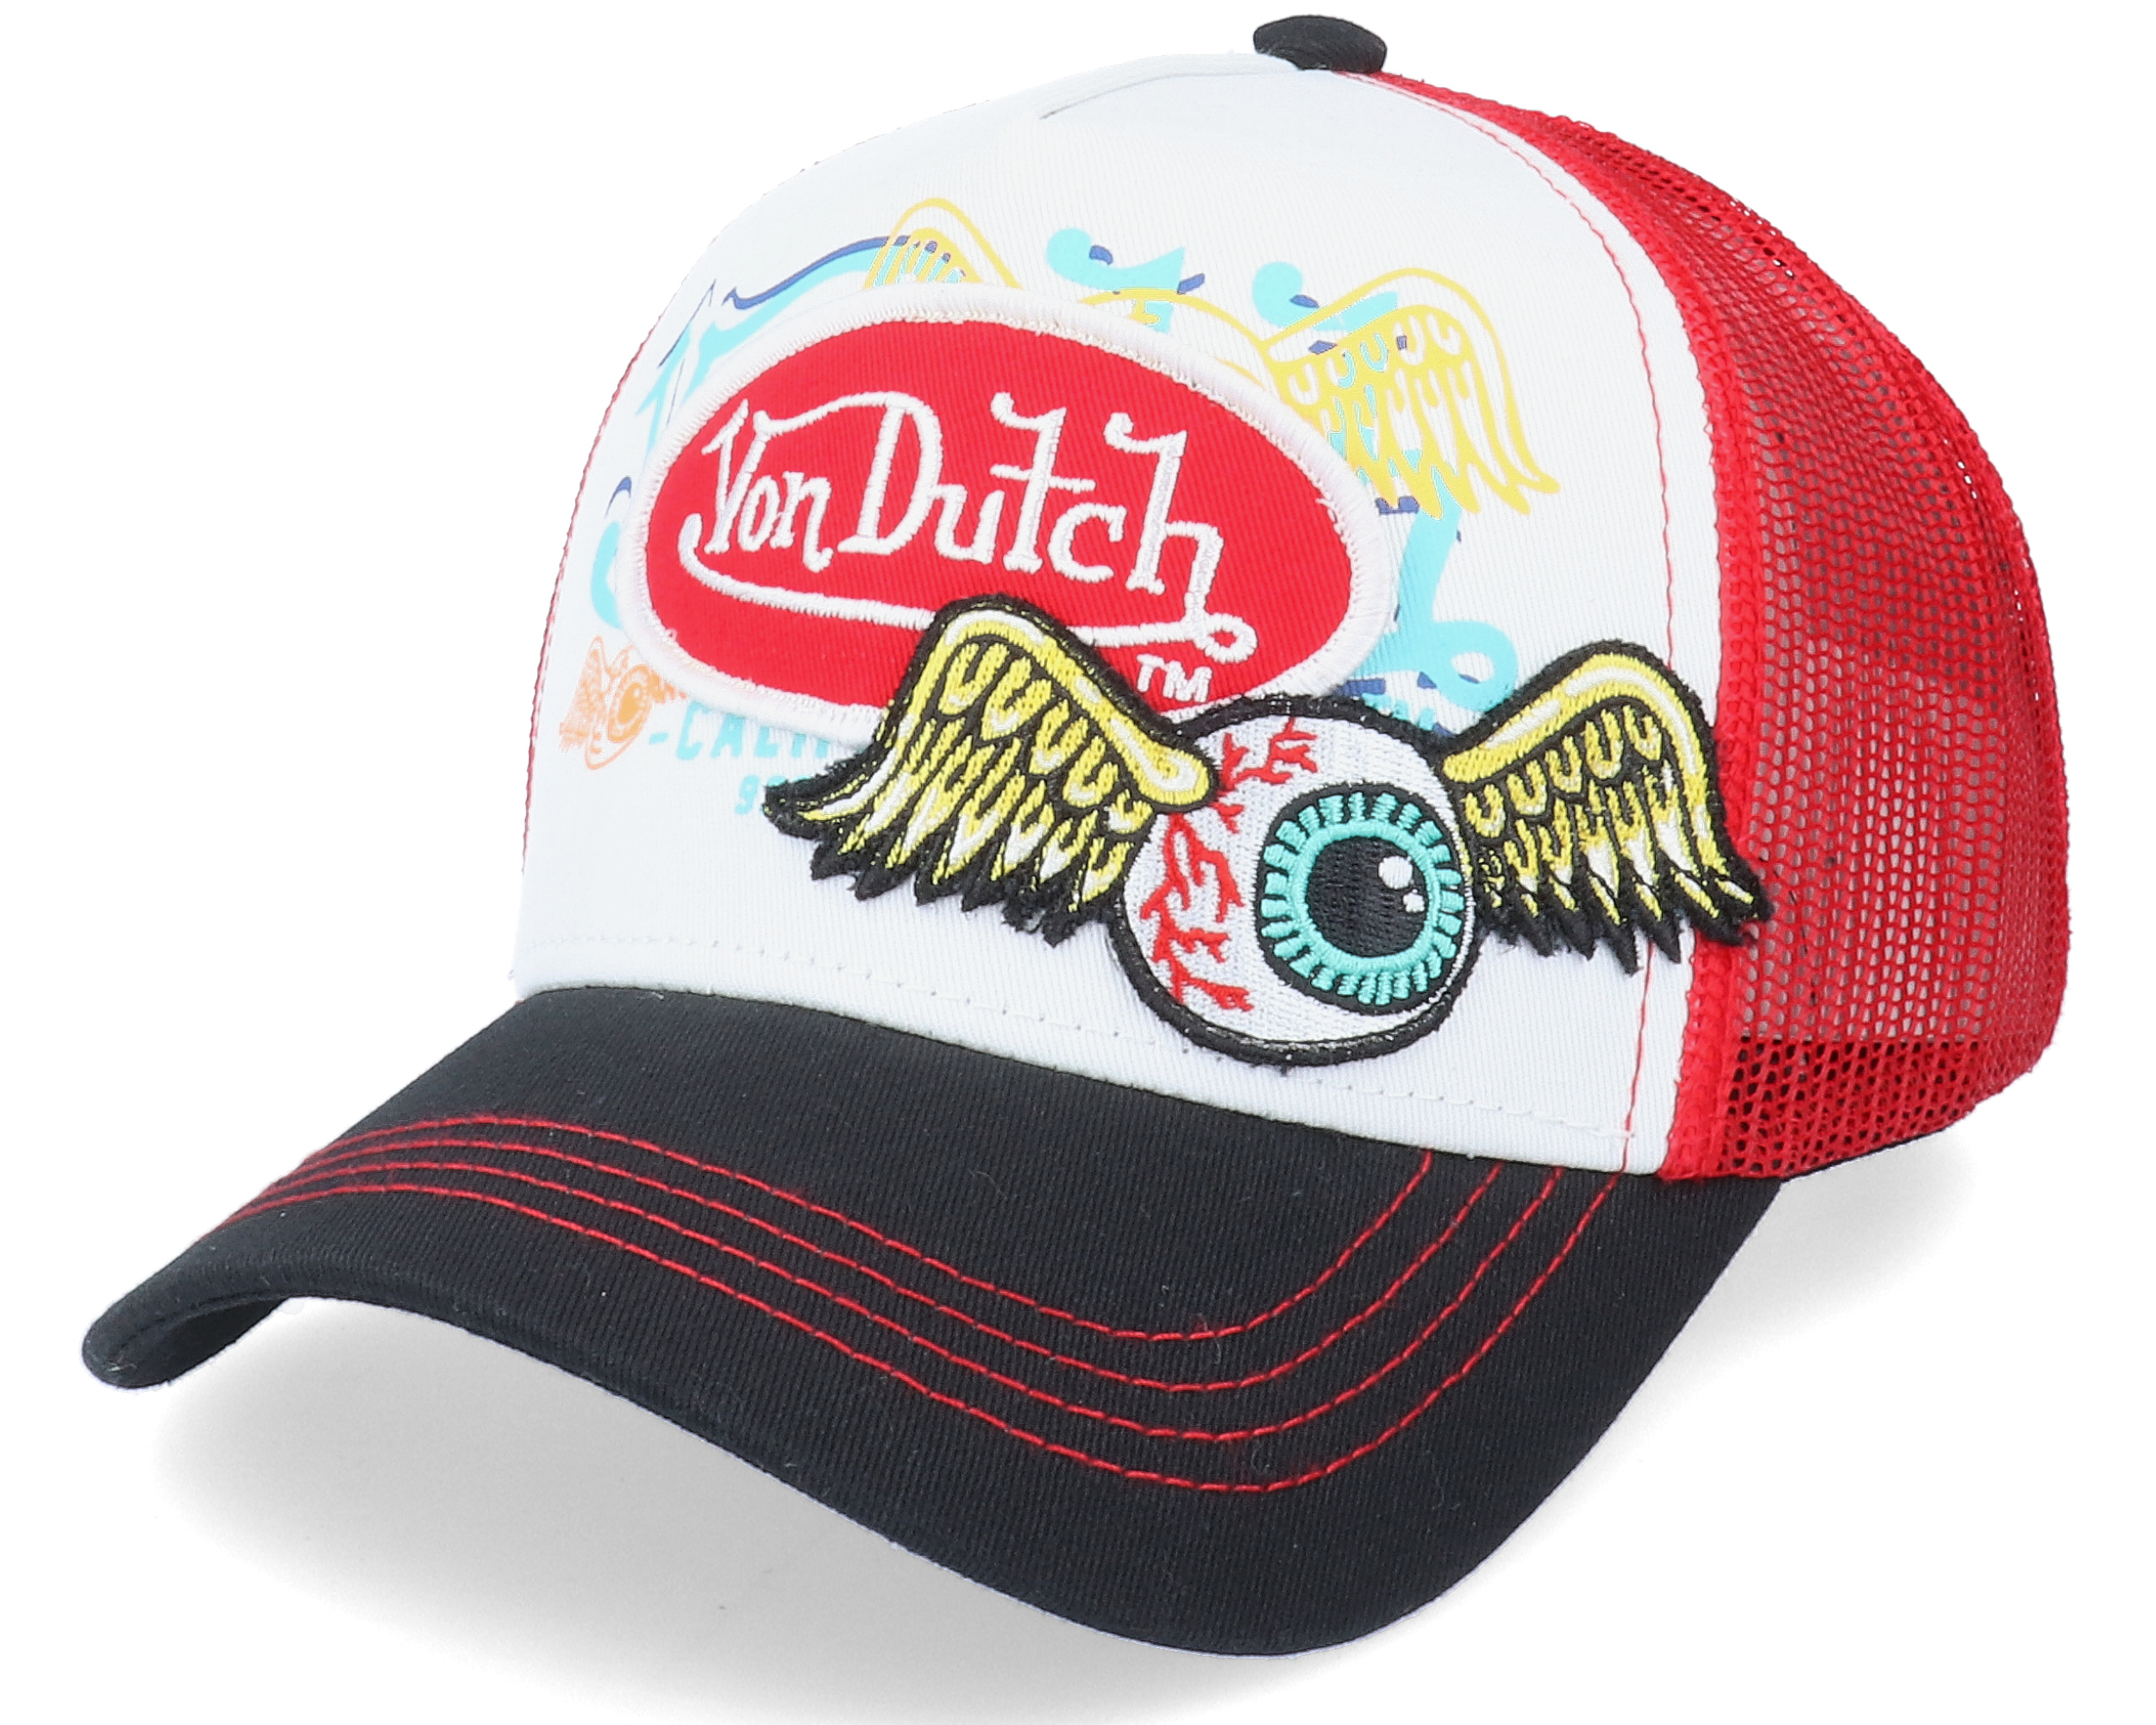 Von Dutch Brown & Red Trucker Hat – Players Closet